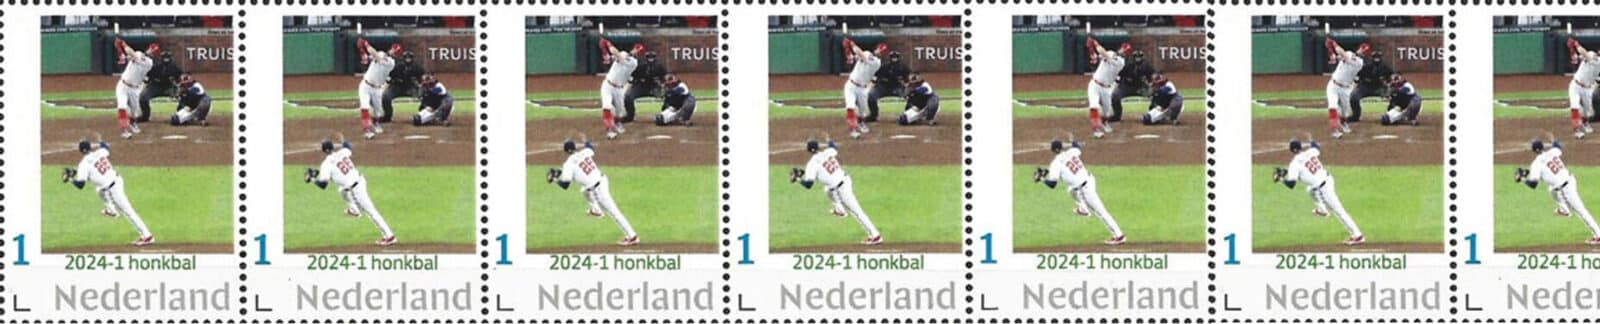 2024 Baseball Postage Stamps header